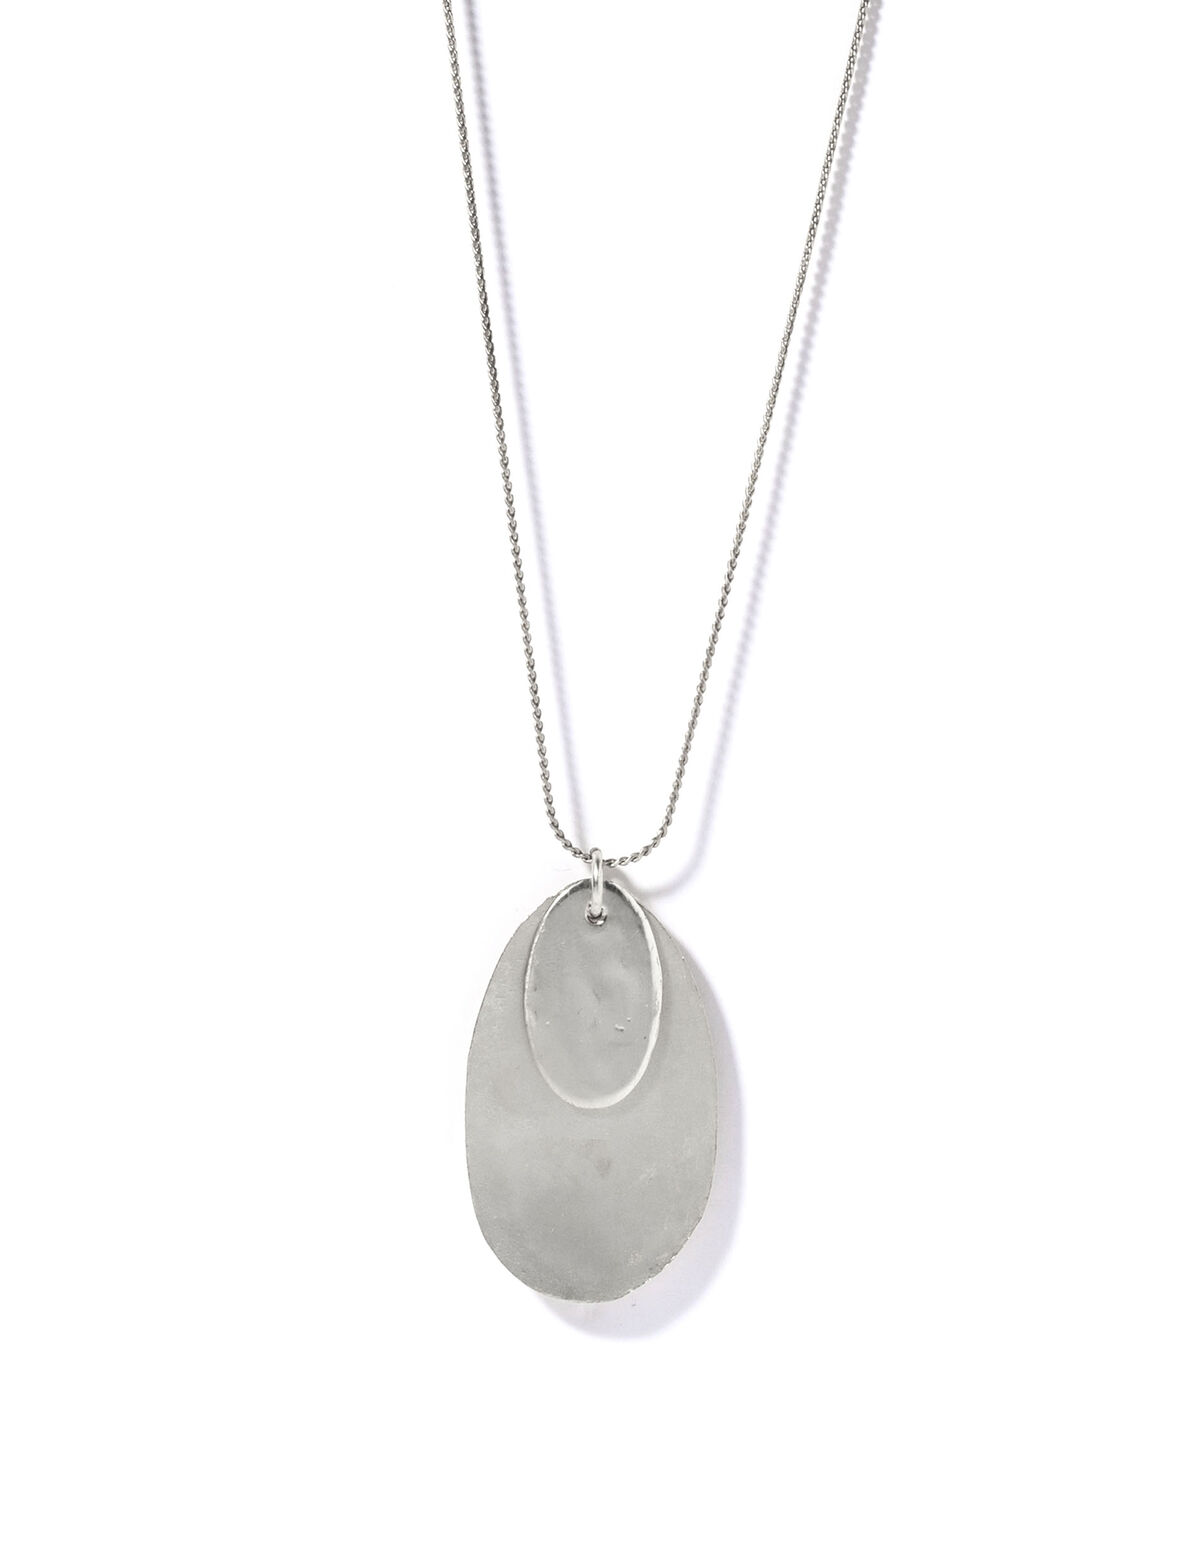 Silver oval scales necklace - Jewelry - Nícoli